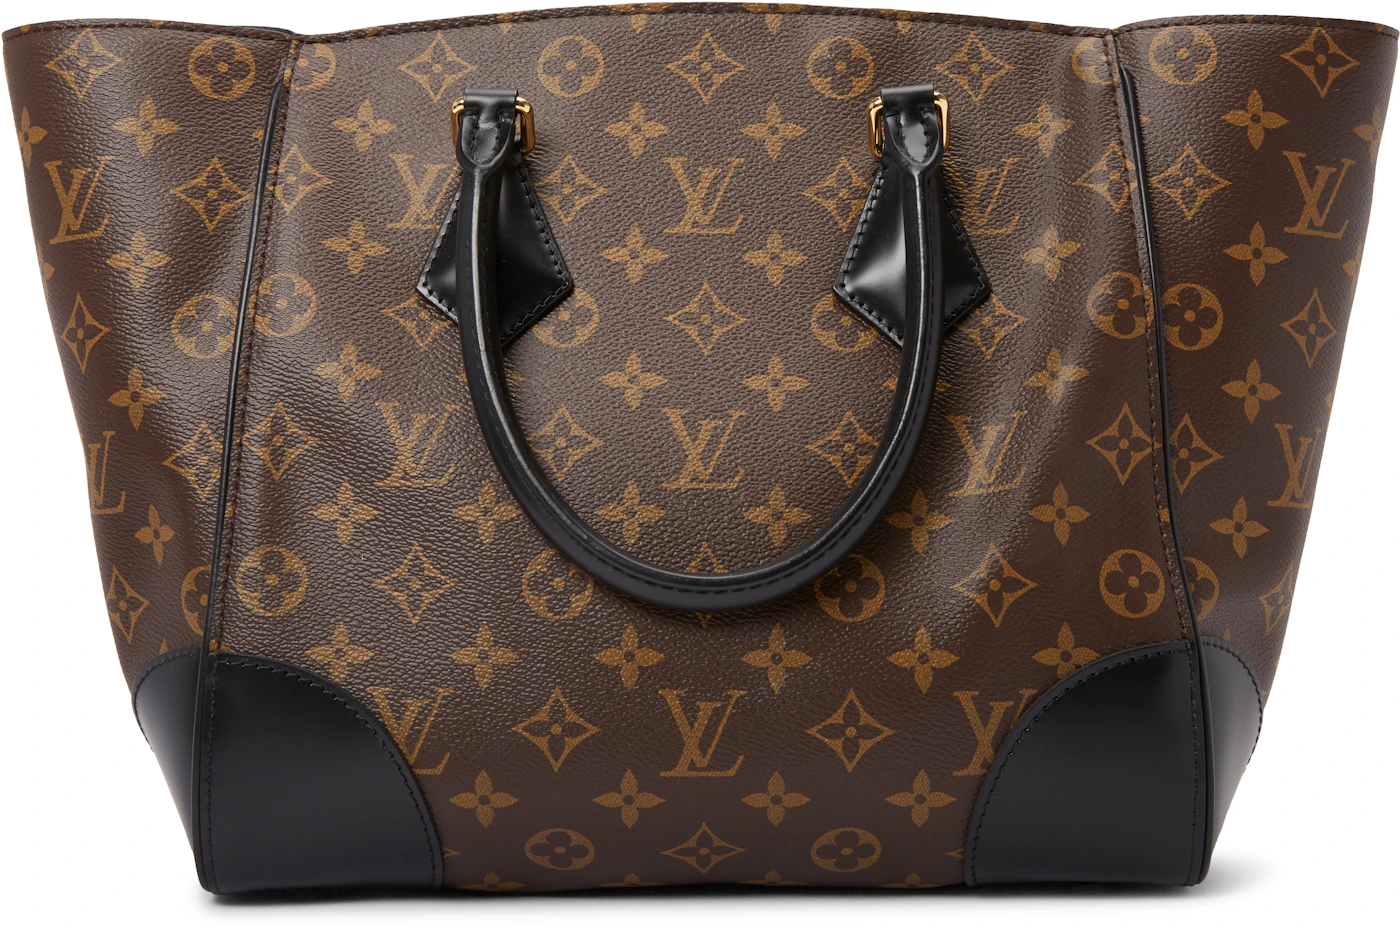 Authentic Louis Vuitton Monogram Phenix mm purse - Depop